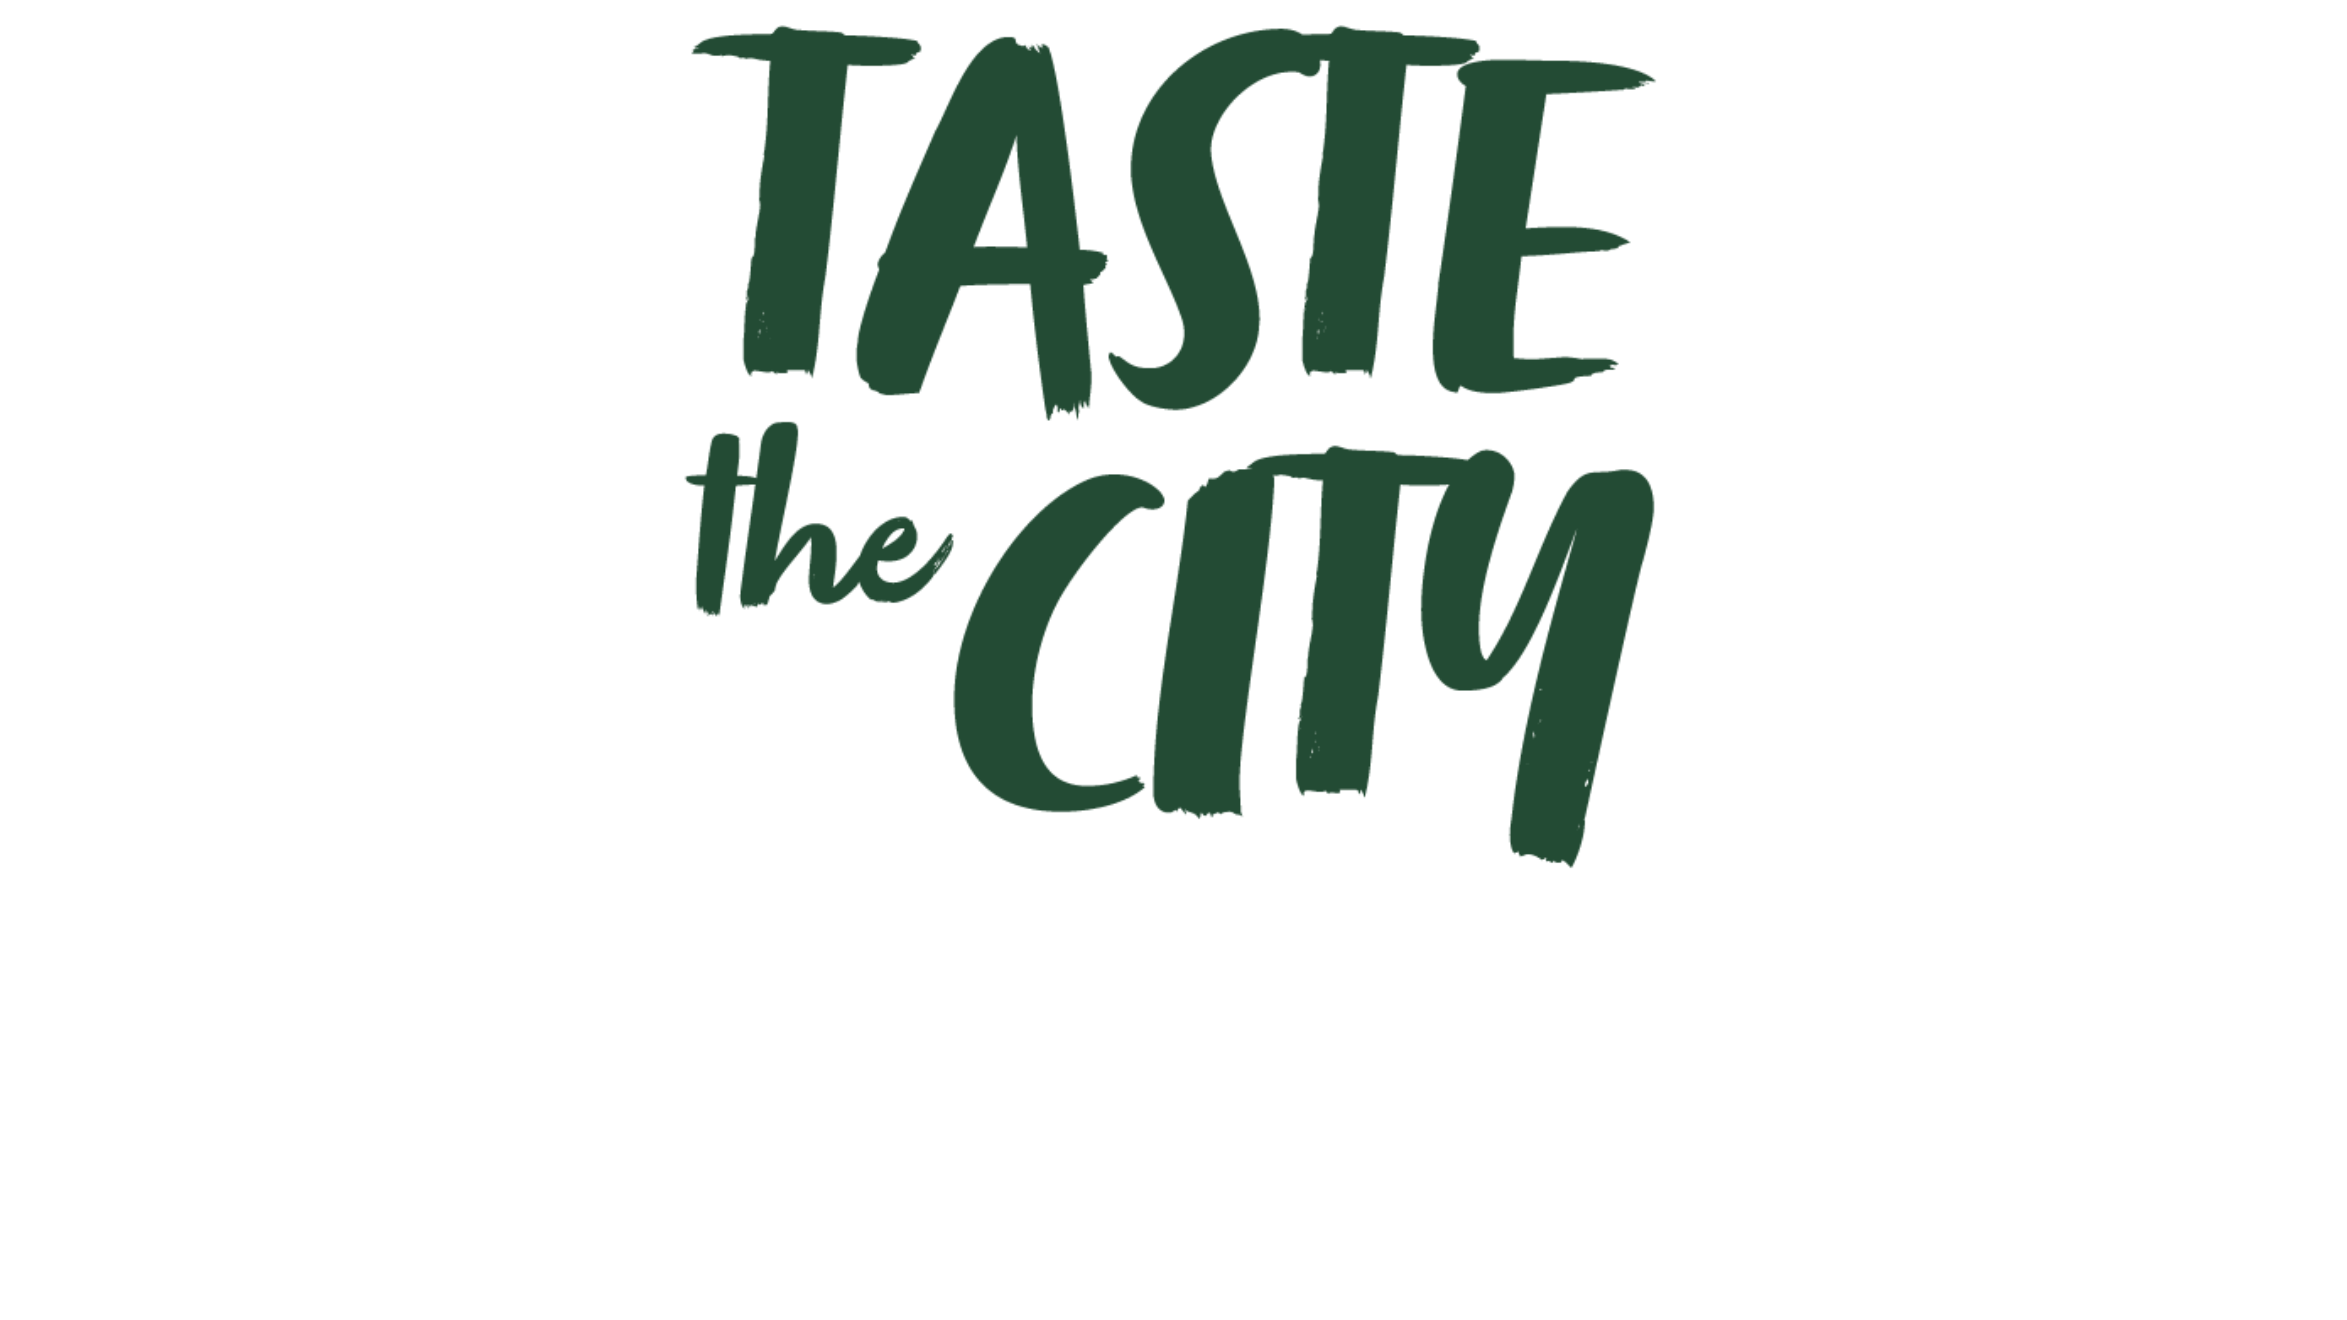 Taste the City logo